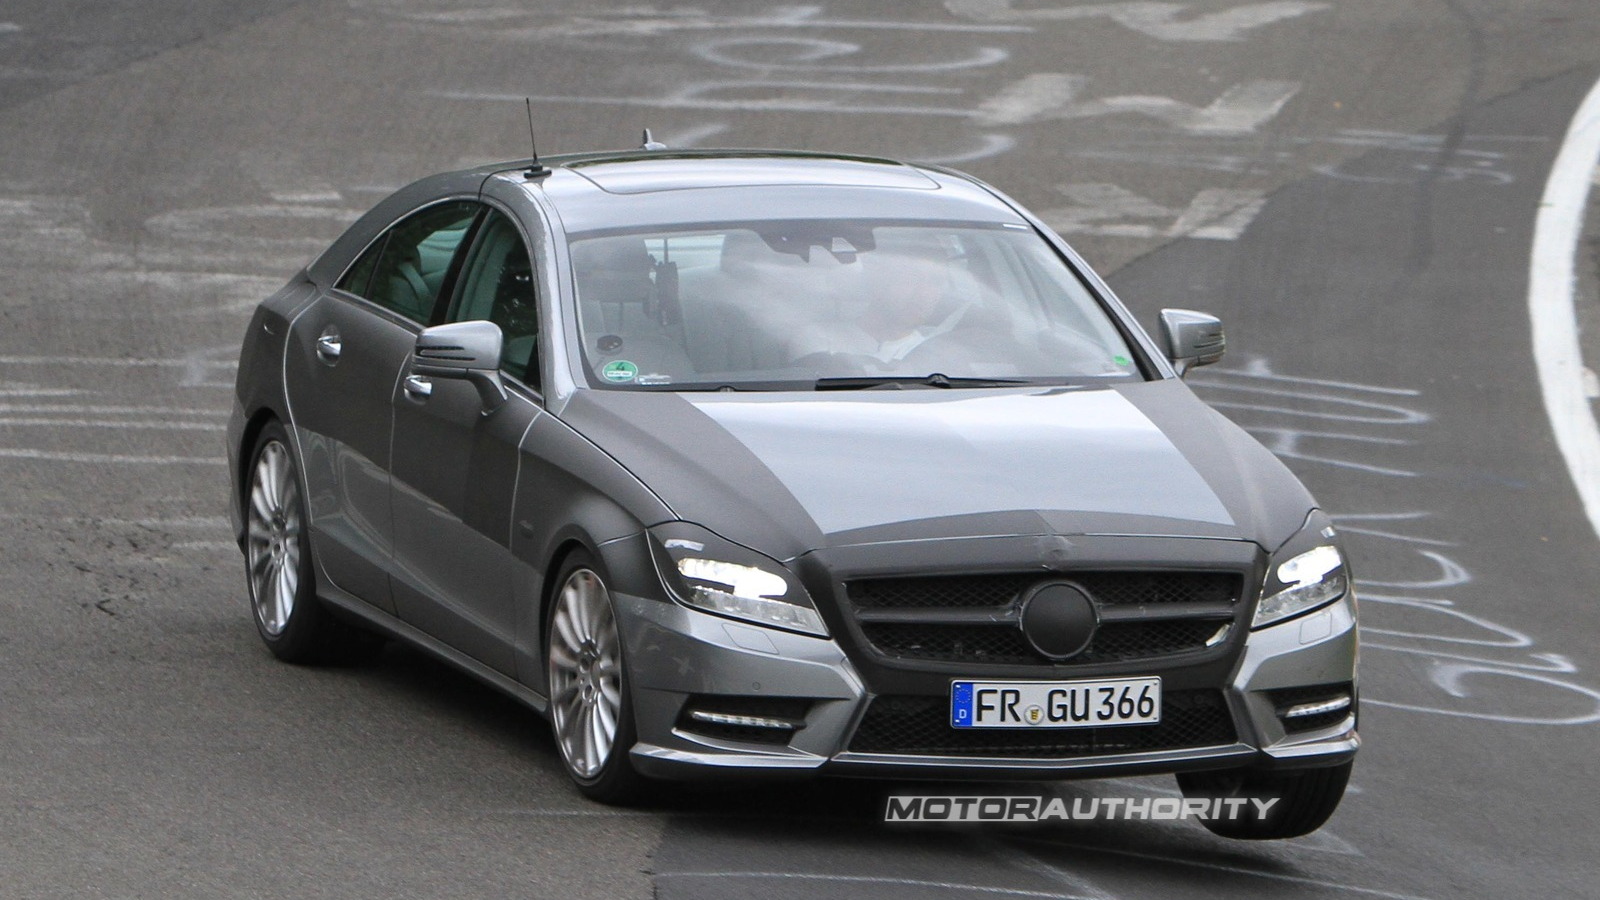 Spy shots: 2011 Mercedes-Benz CLS 